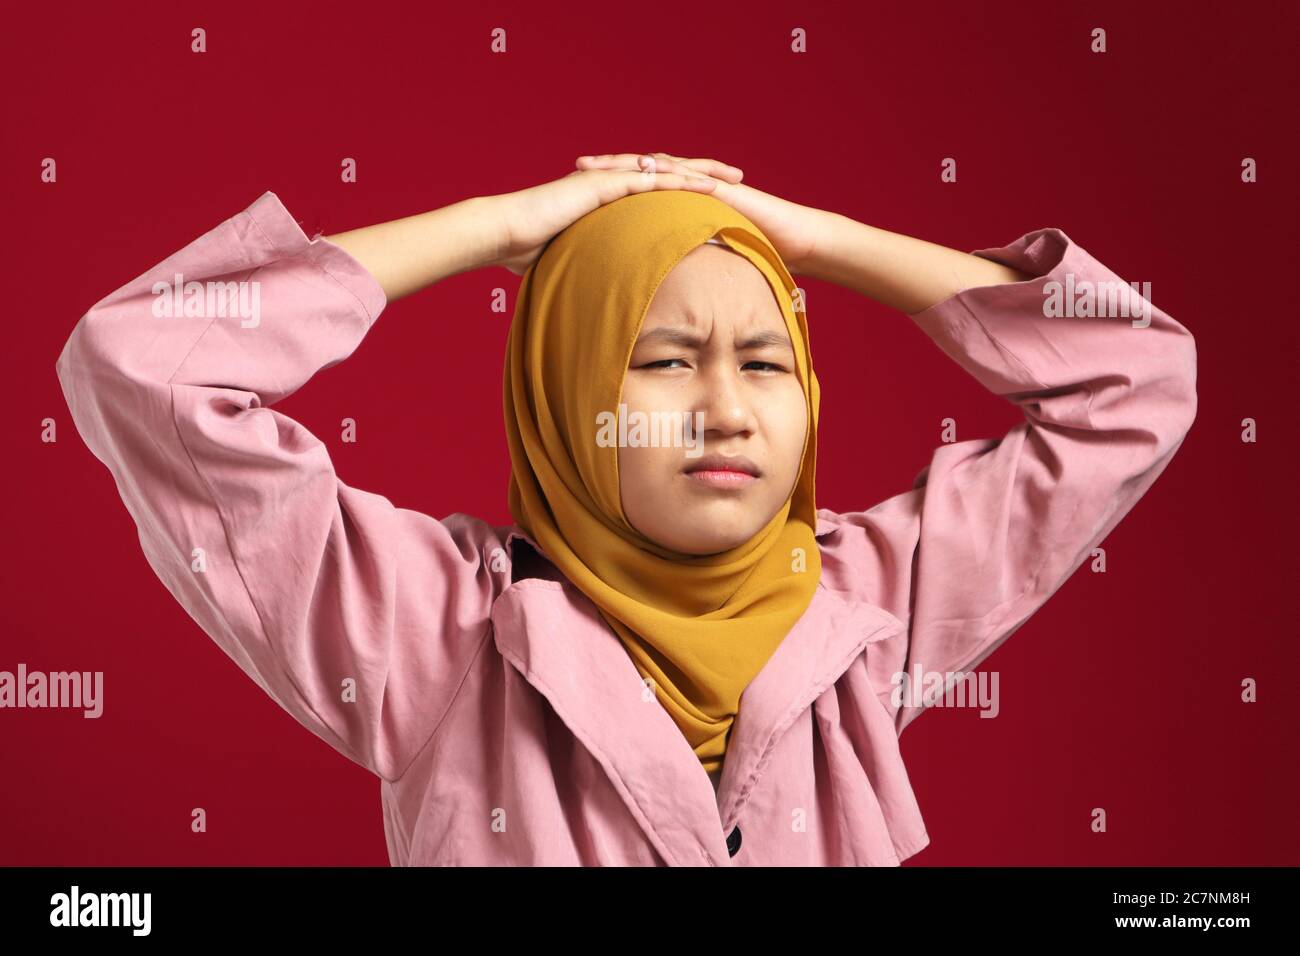 Junge muslimische Teenager-Mädchen trägt Hijab starrte auf Kamera mit verdächtigem Blick, wütend zynischen Ausdruck, vor rotem Hintergrund Stockfoto